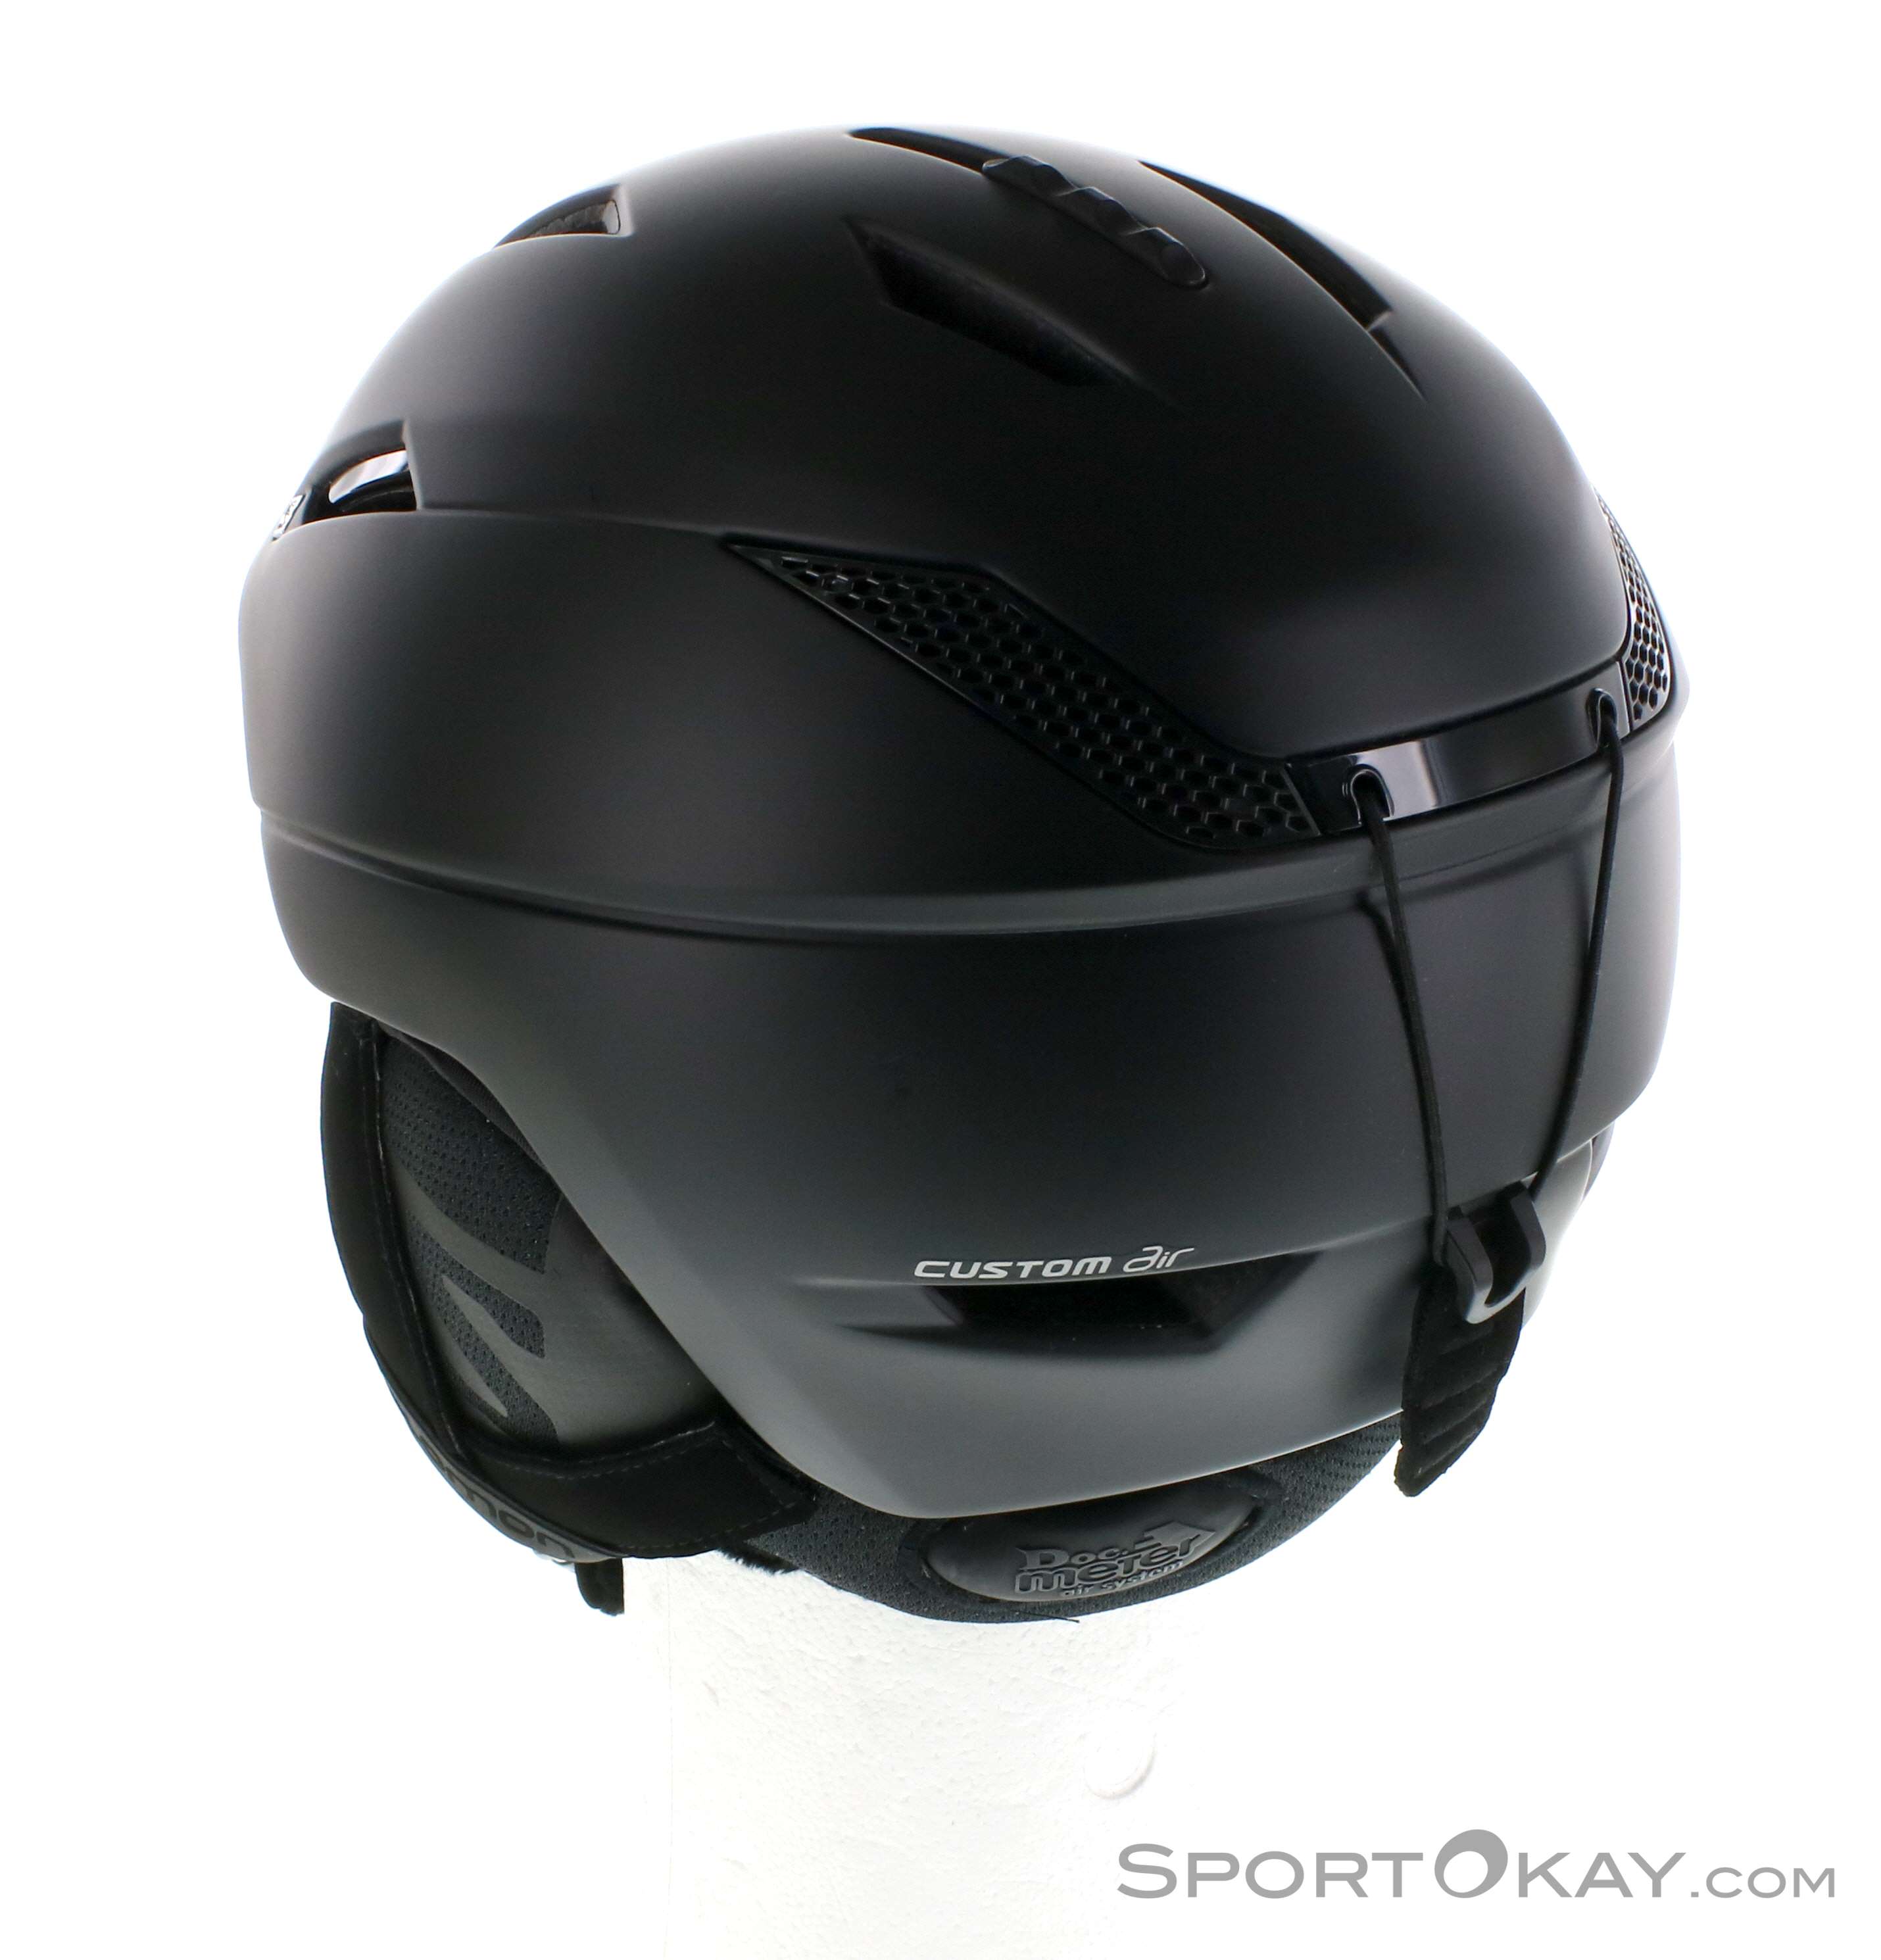 Overtekenen Geaccepteerd Aanbeveling Salomon Ranger 2 Custom Air Ski Helmet - Ski Helmets - Ski Helmets &  Accessory - Ski & Freeride - All